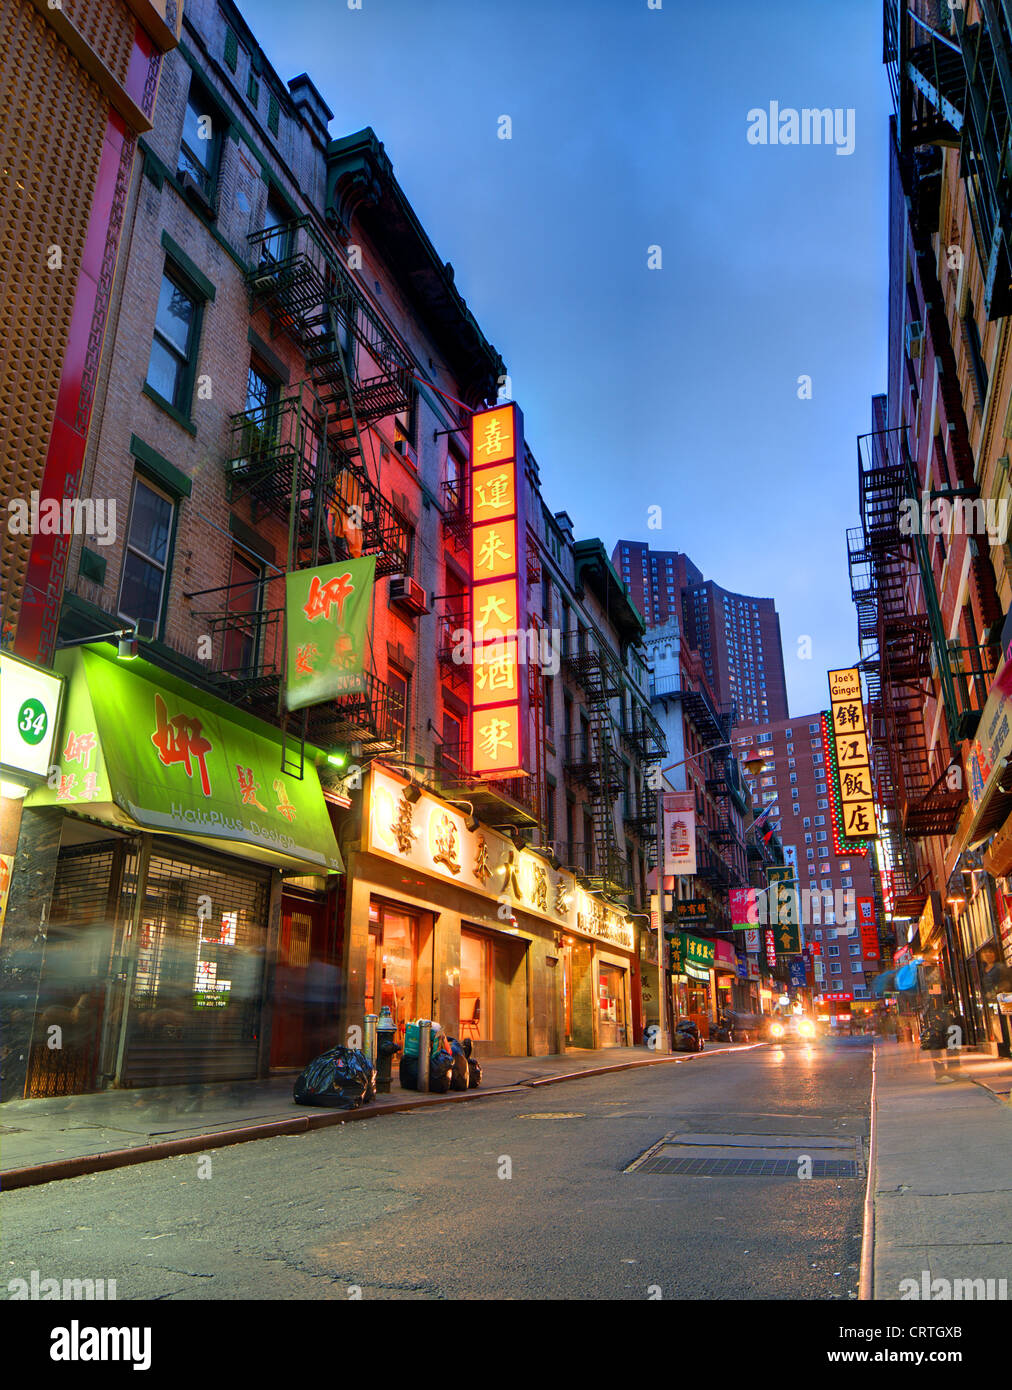 Chinatown in the New York City borough of Manhattan. Stock Photo